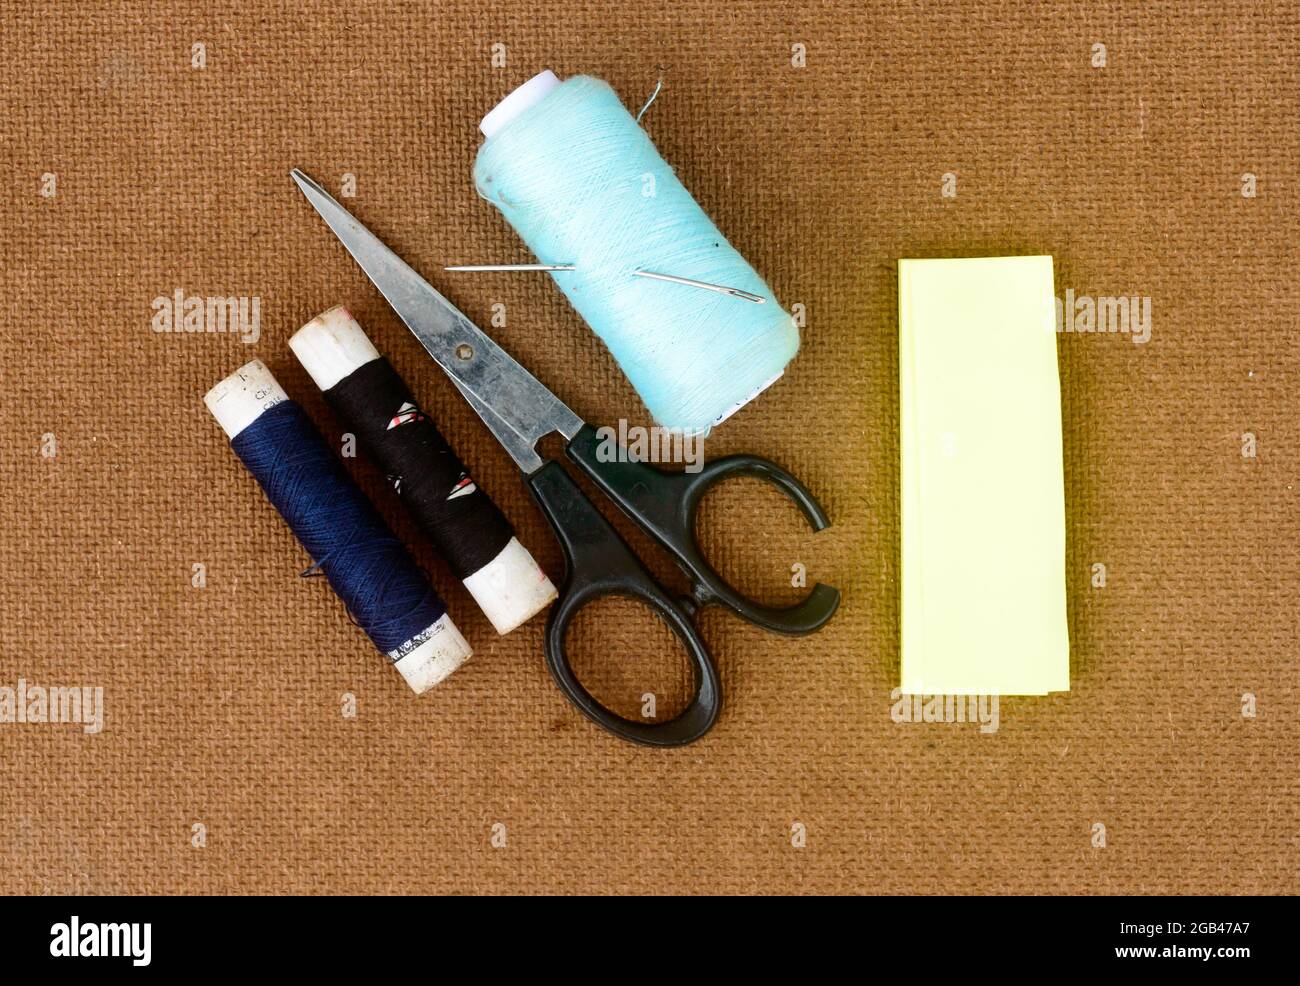 Ensemble d'outils et d'articles de couture pour le tricotage et le tissage placés sur un panneau de papier tissé de couleur brune. Bricolage Art et artisanat concept de fond. Banque D'Images